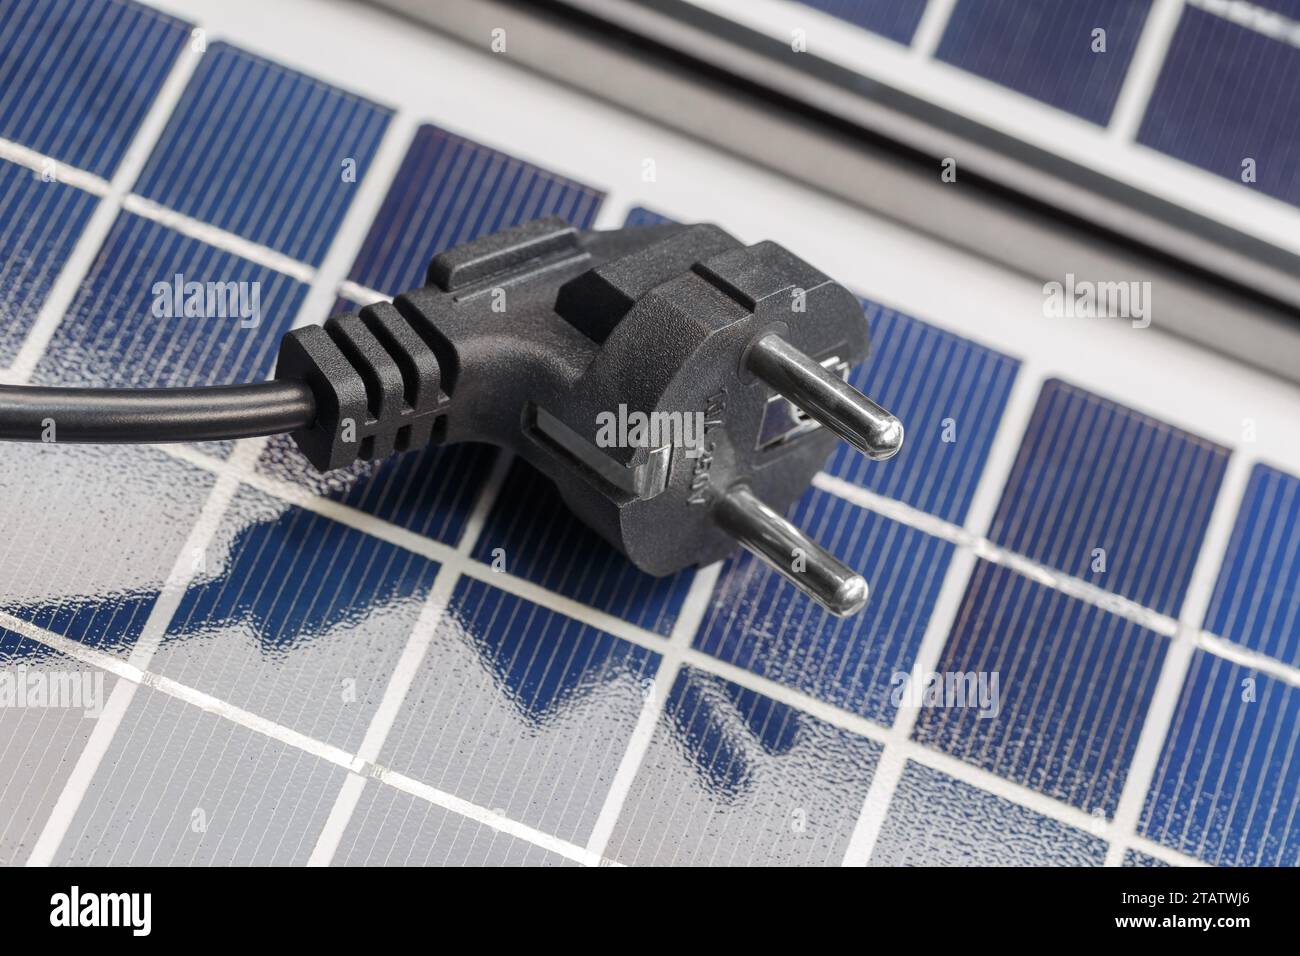 Una spina elettrica si trova sui pannelli solari. Il concetto di energia solare rispettosa dell'ambiente. Foto Stock